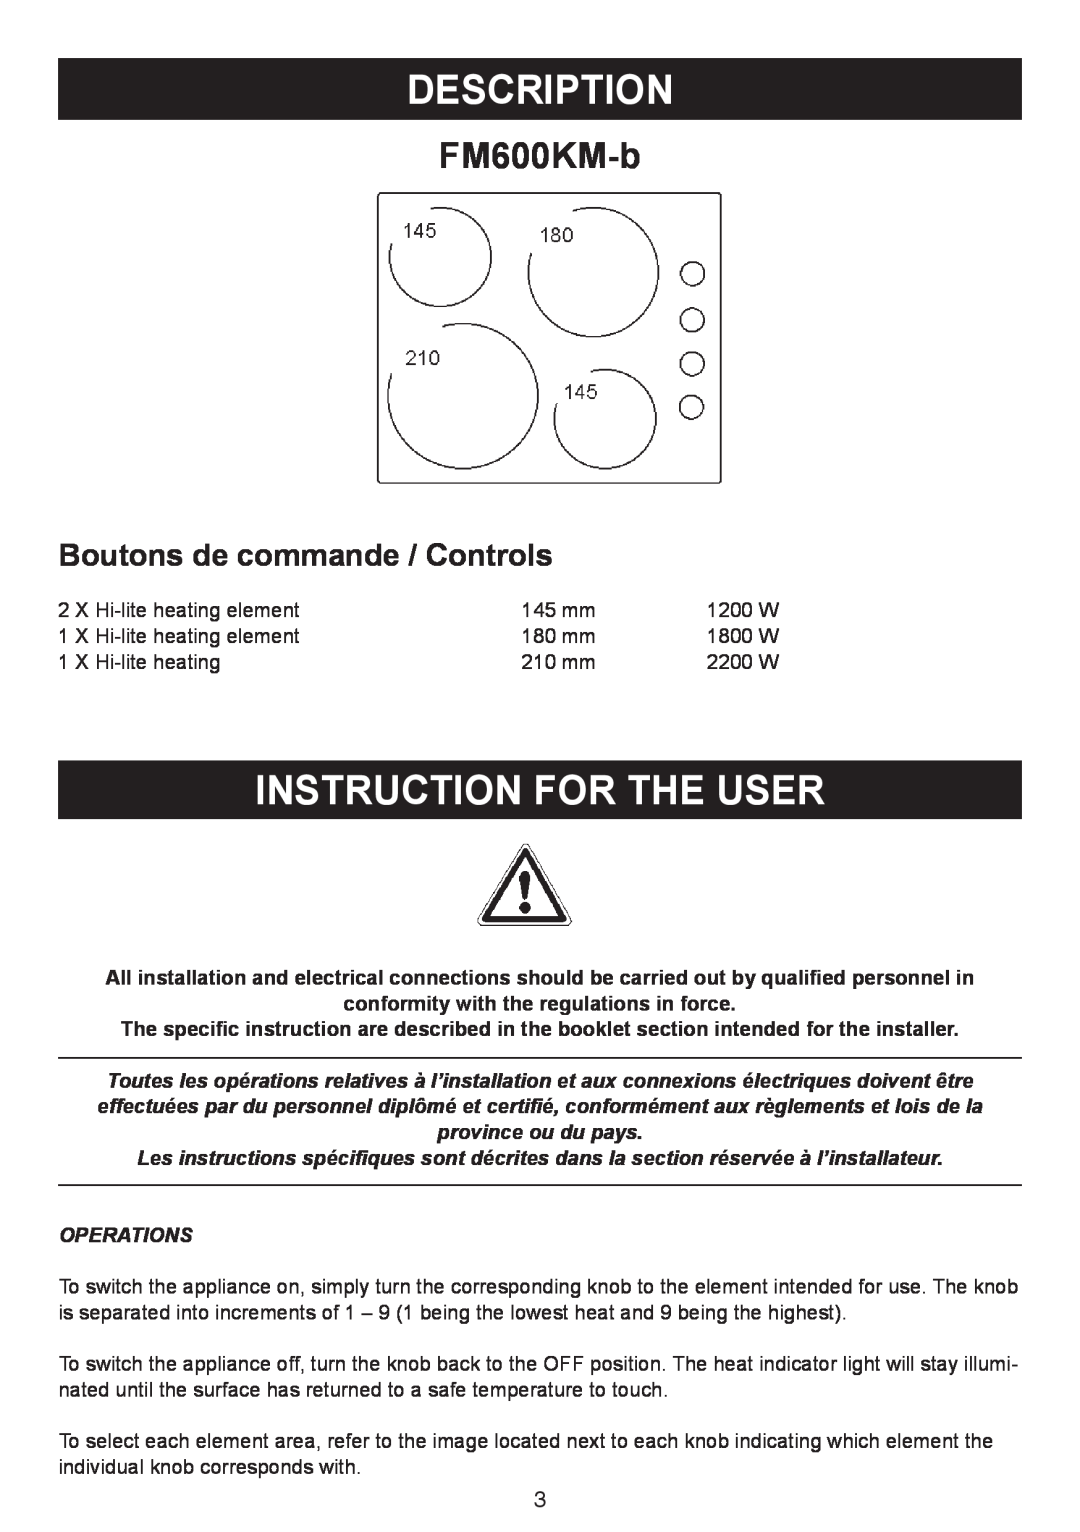 AEG FM600KM-B user manual Description, Instruction For The User, FM600KM-b, Boutons de commande / Controls 